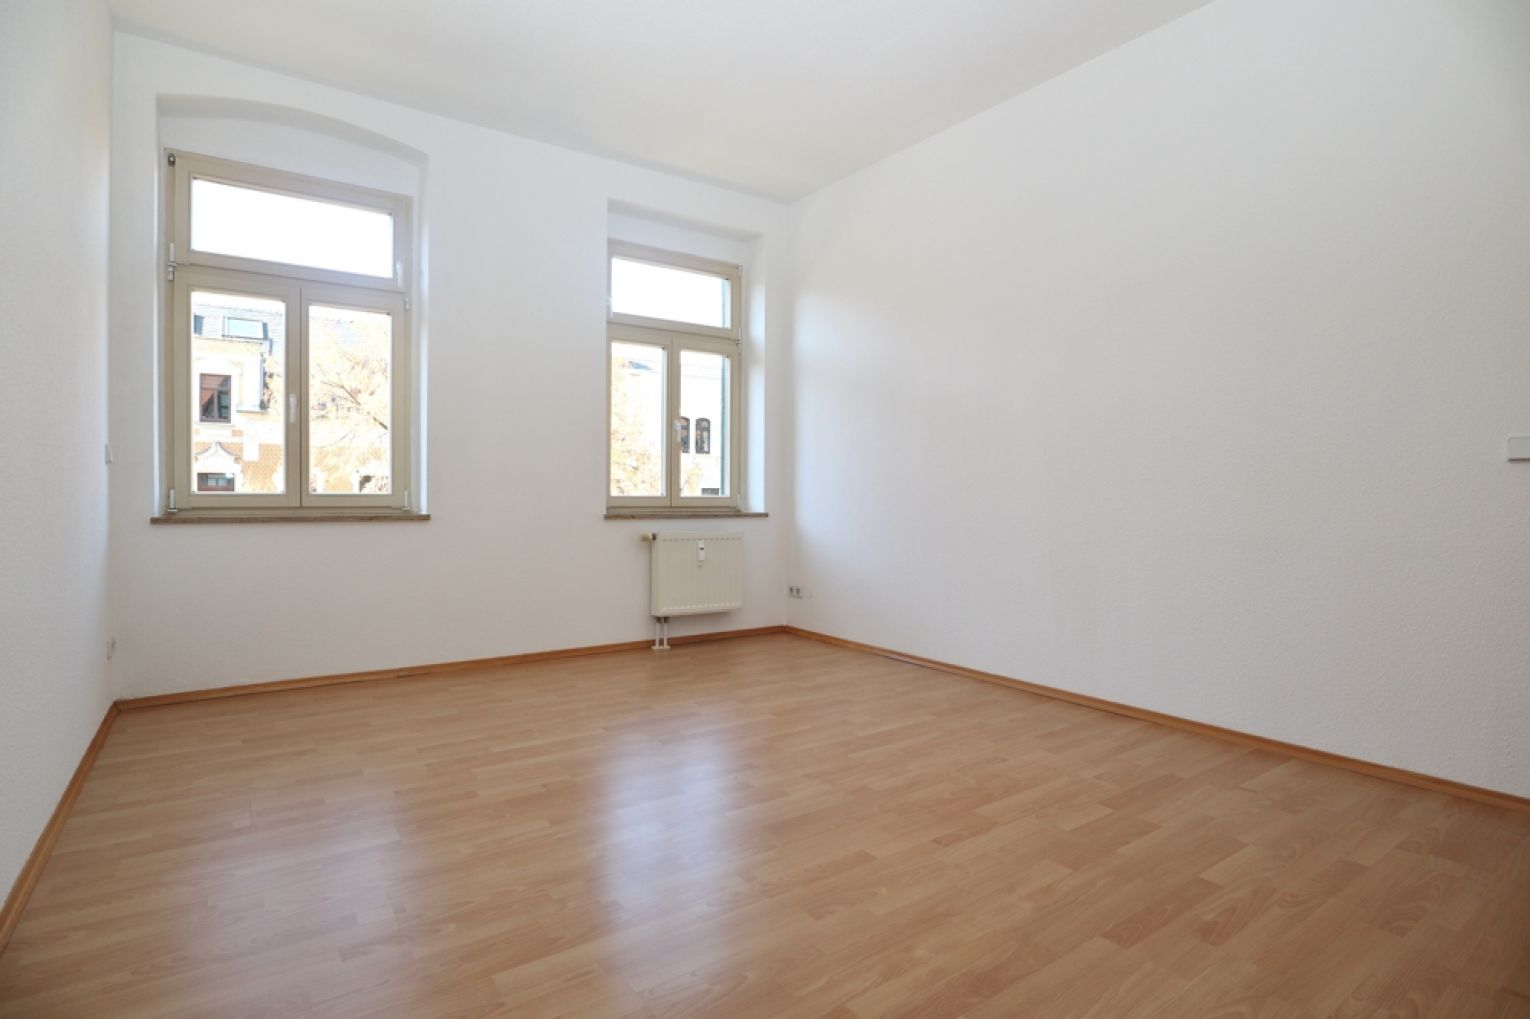 Altendorf • 3-Raum Wohnung • in Chemnitz • 2 Balkone • Stellplatz • zur Miete • jetzt besichtigen